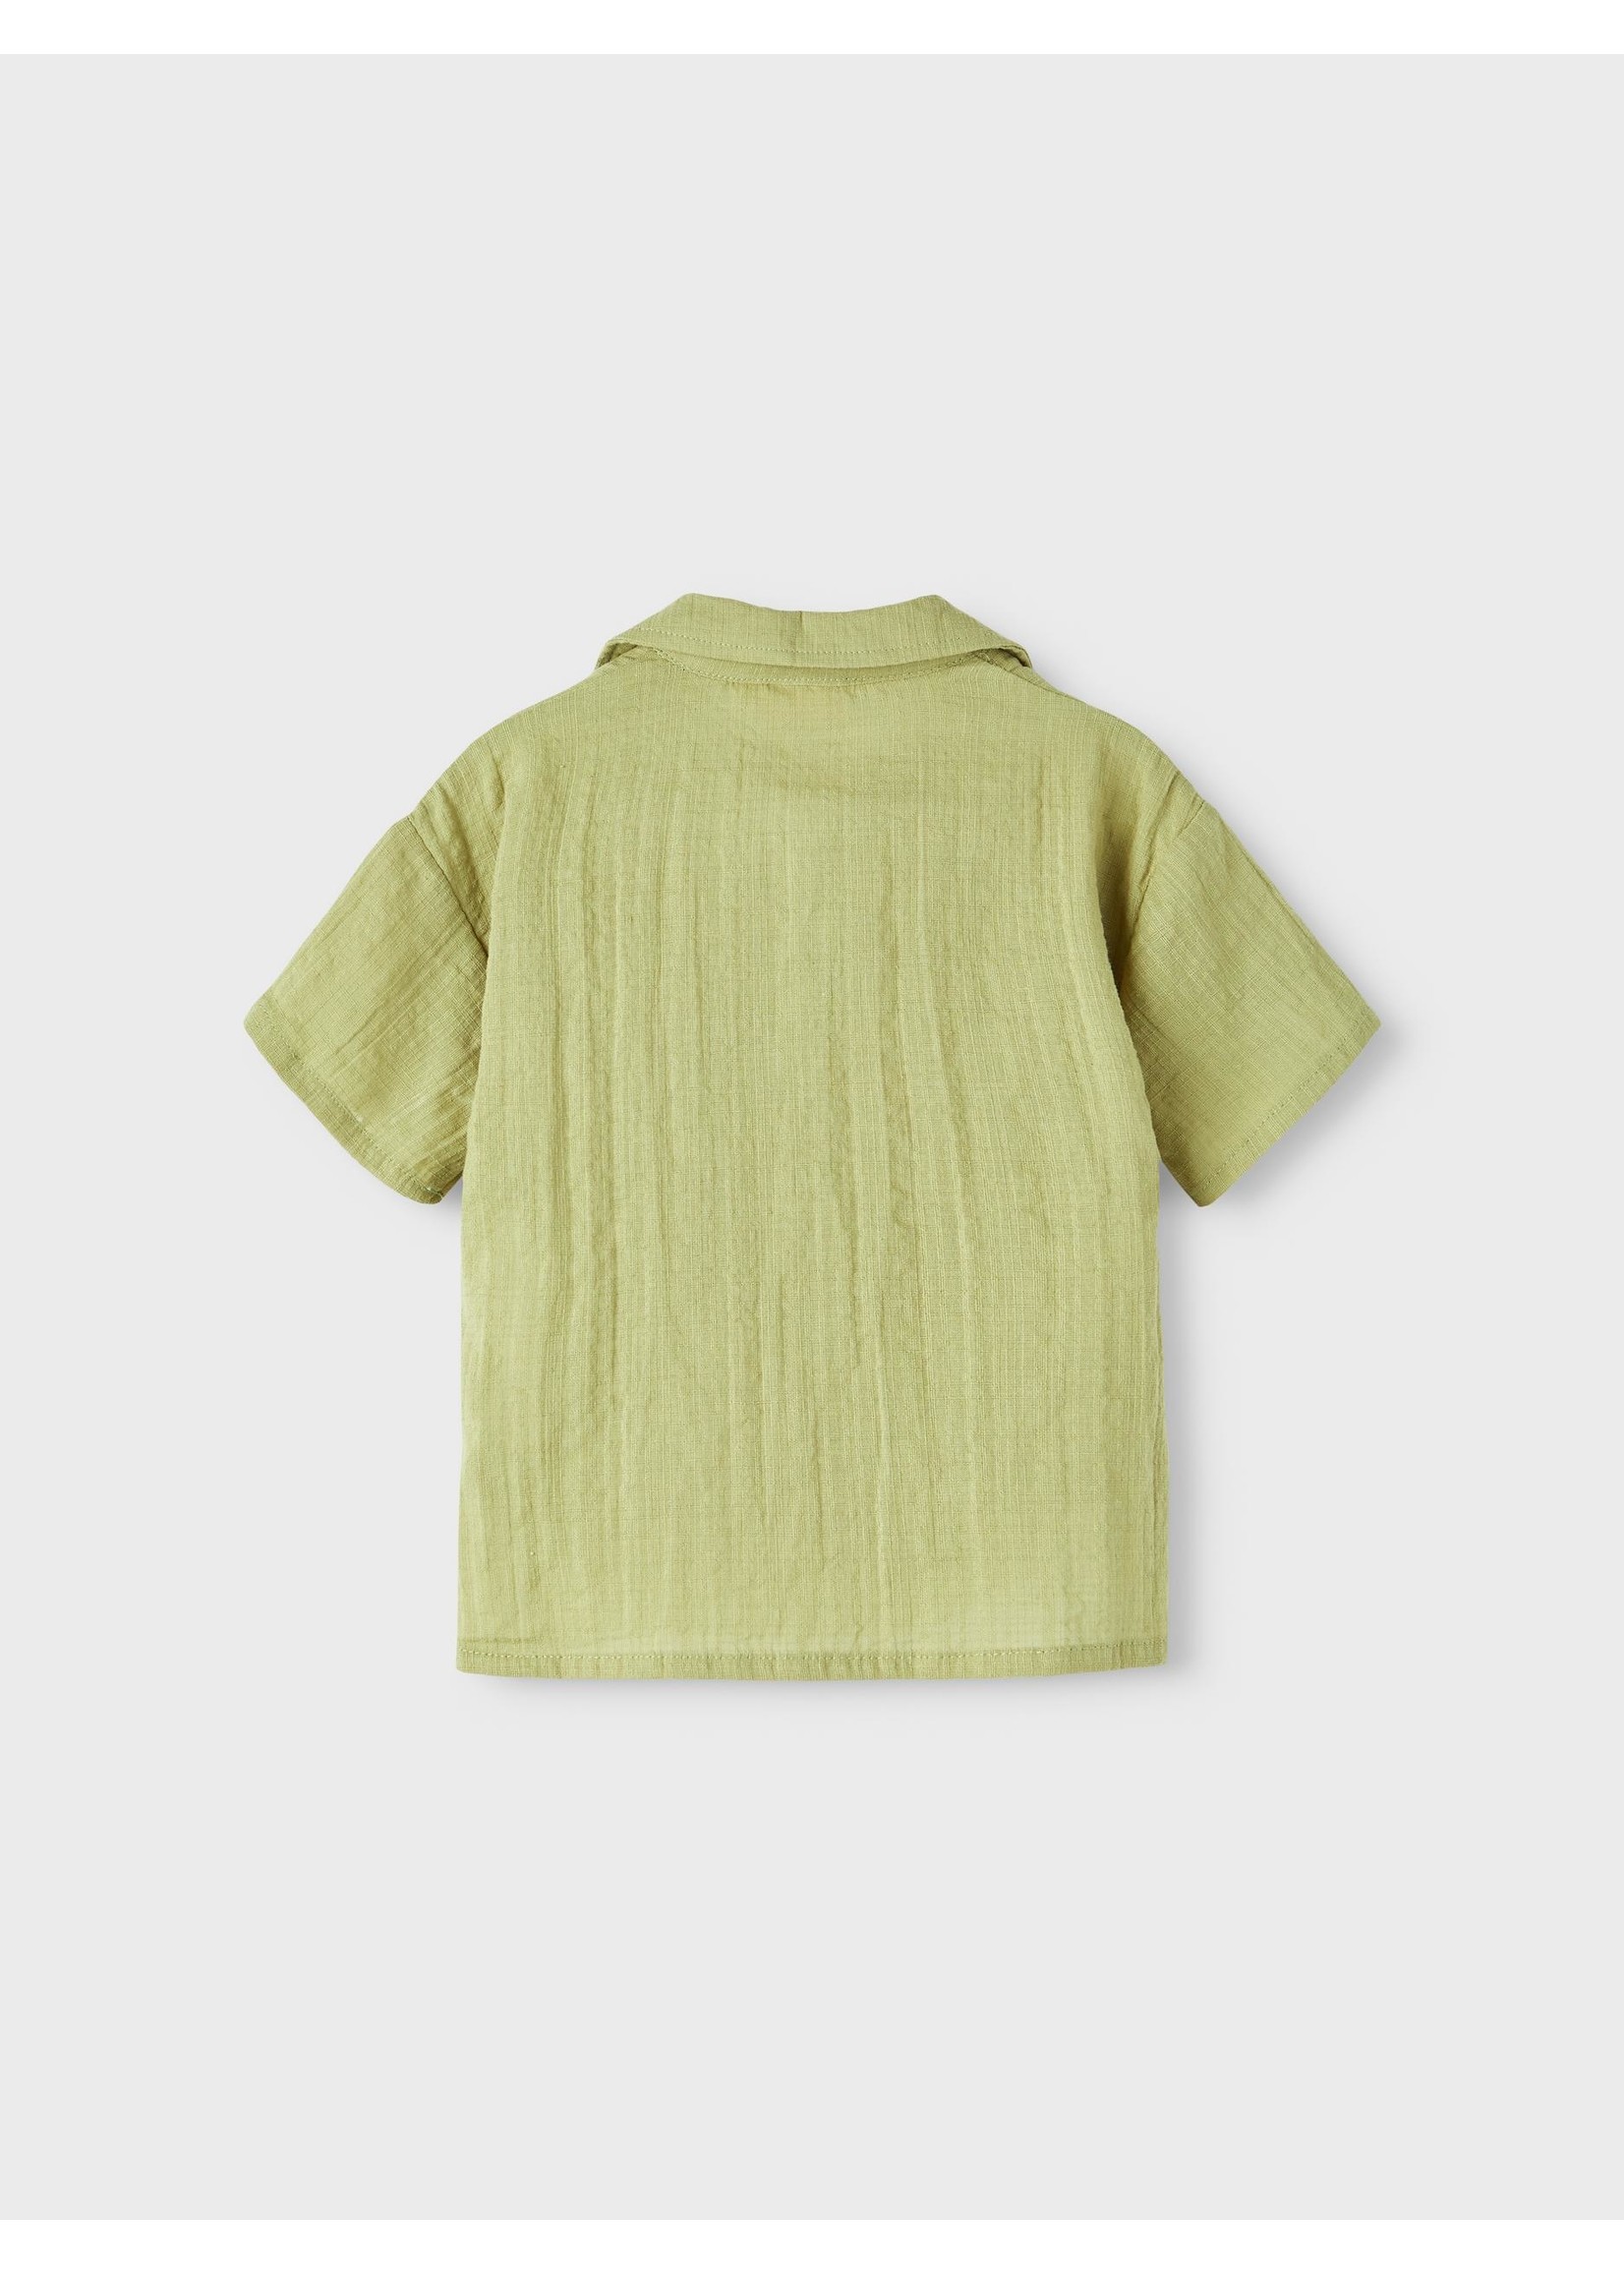 LIL'ATELIER Shirt groen